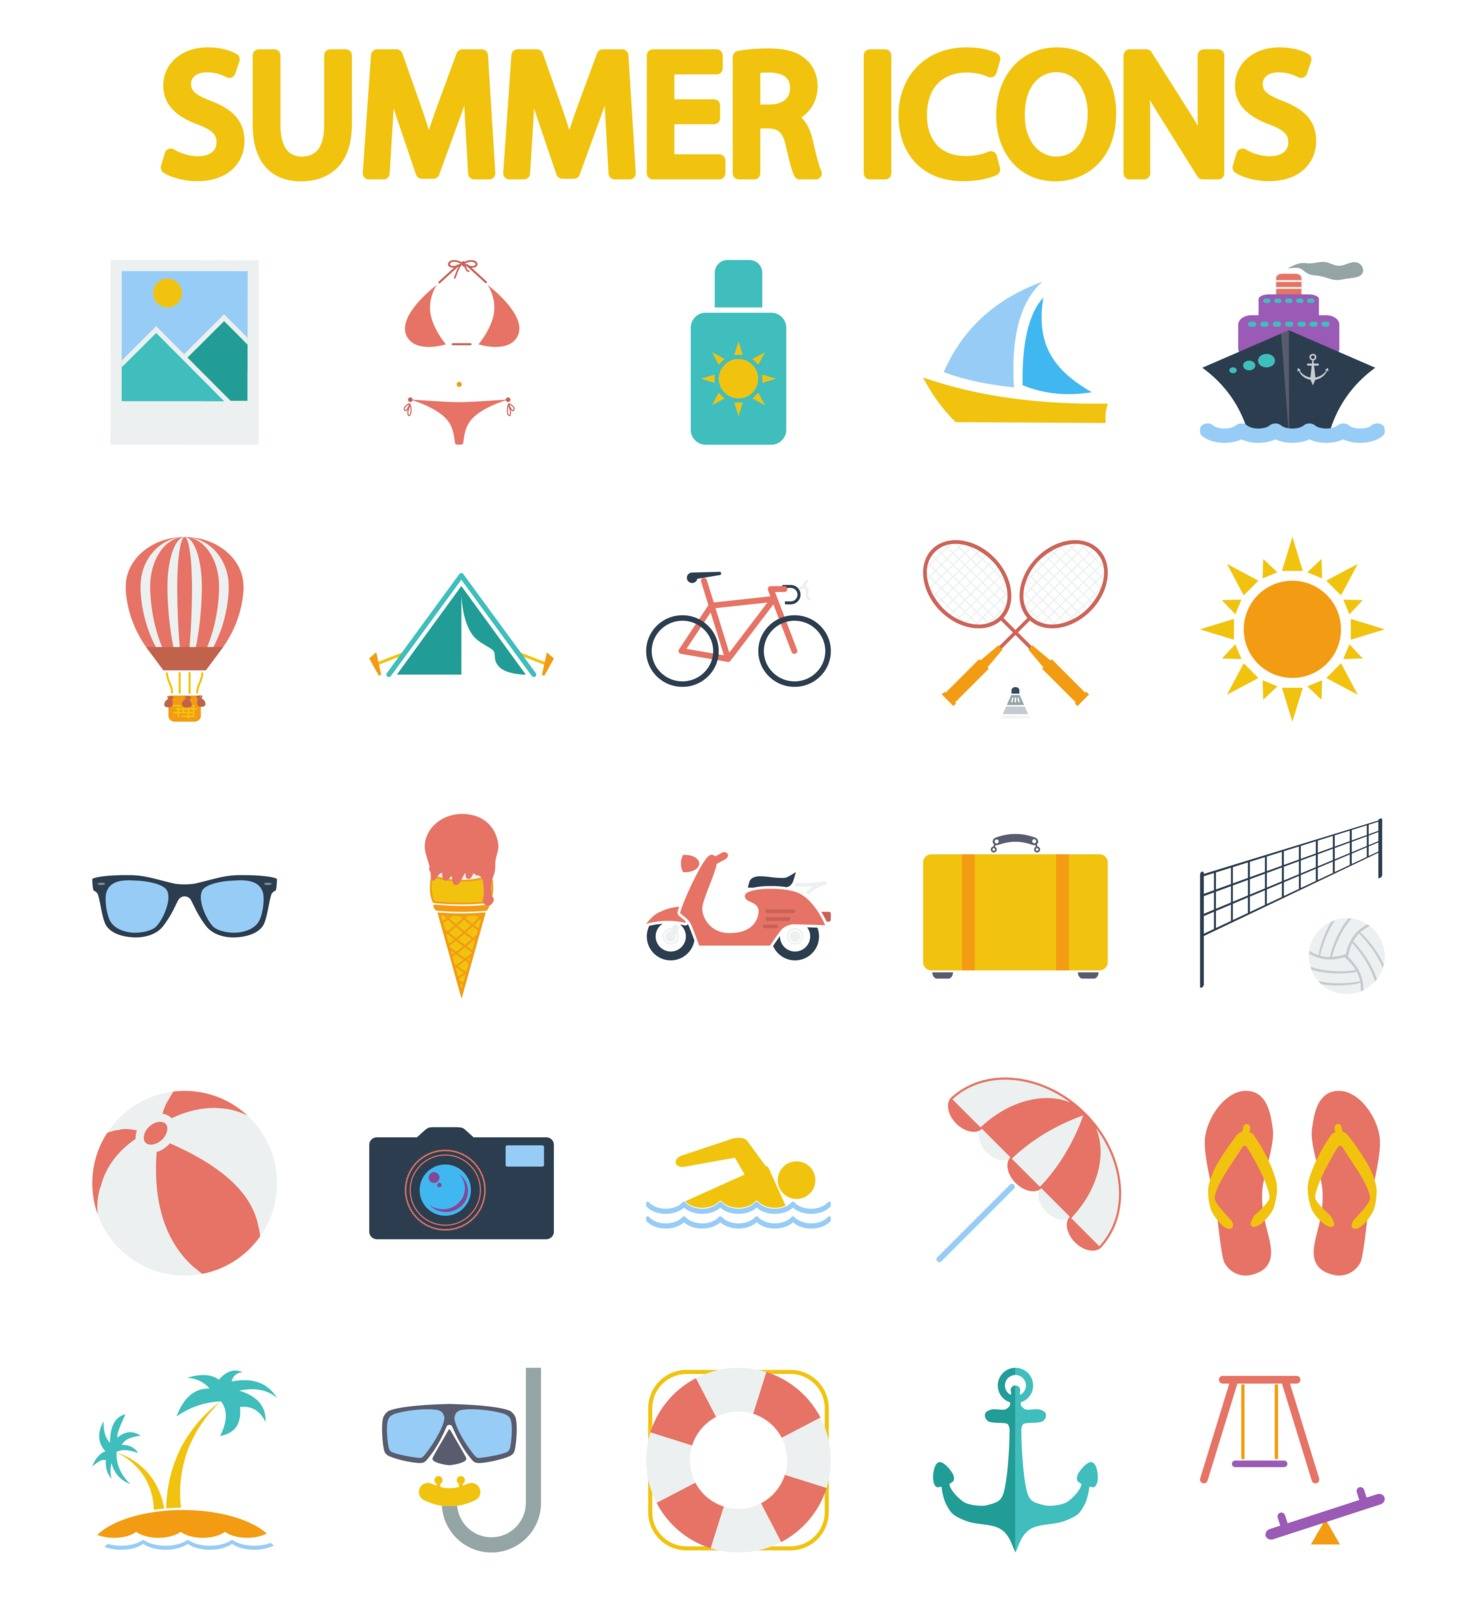 Summer Icons by smoki